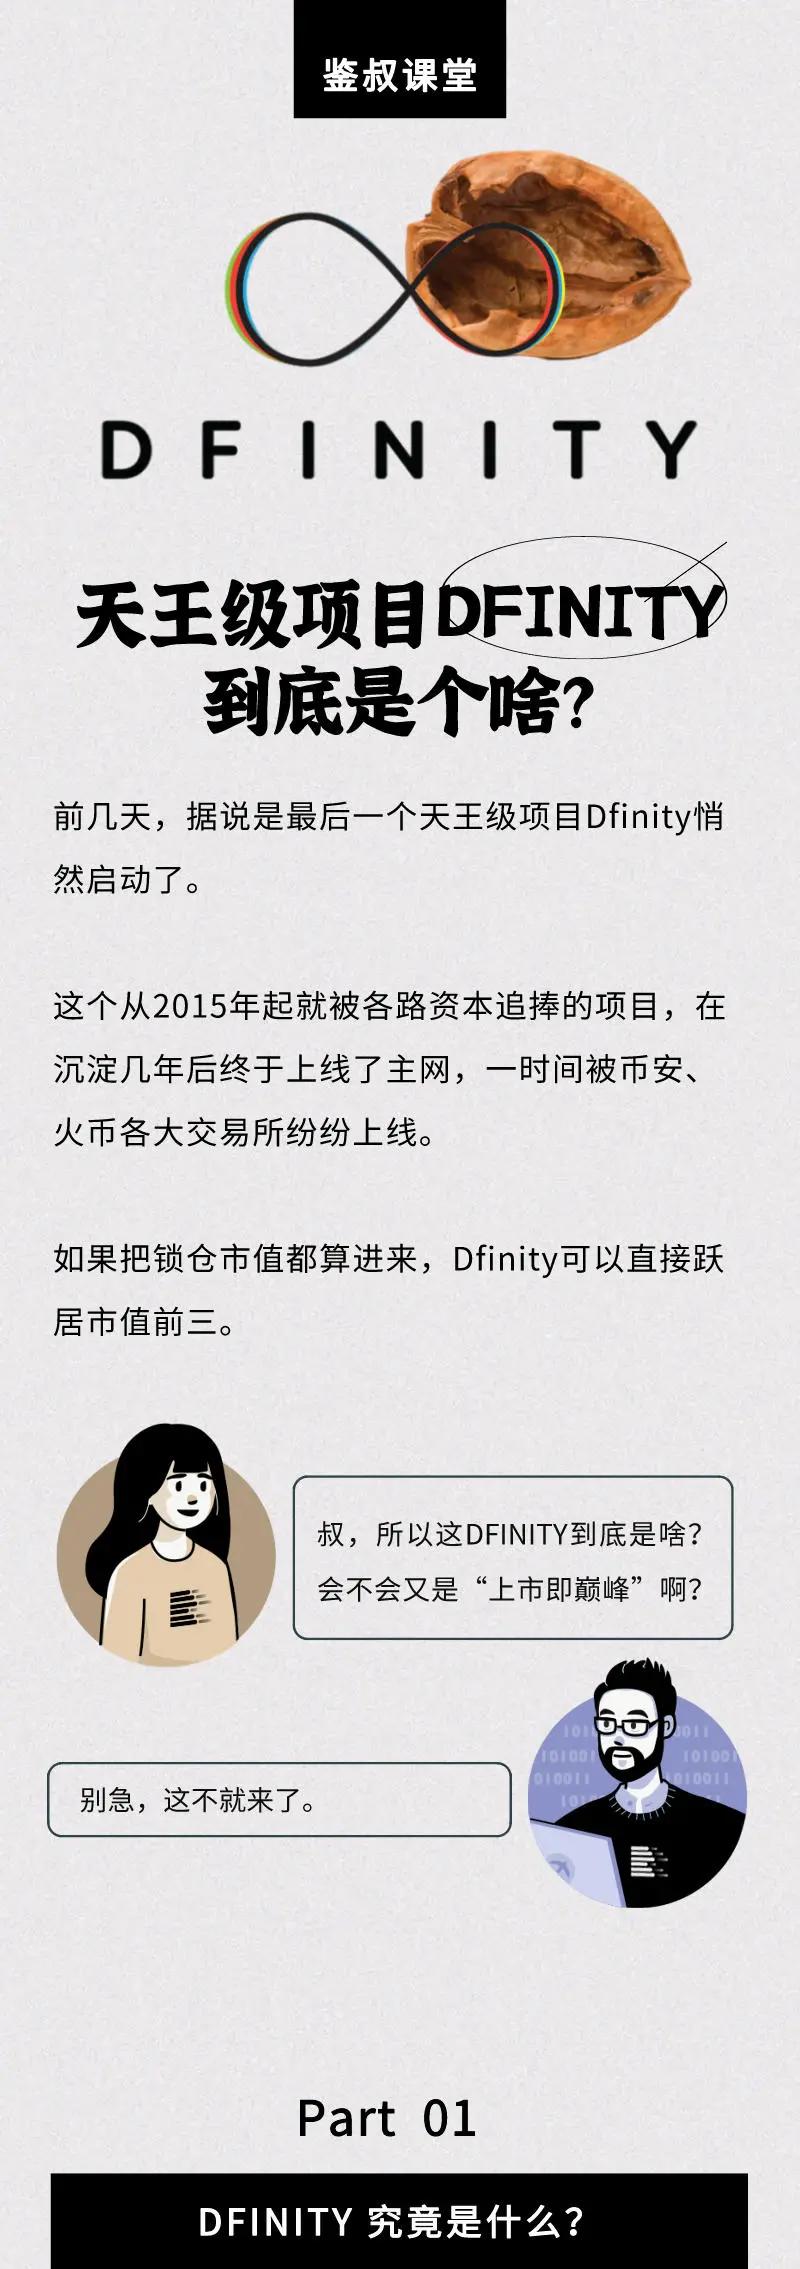 dfinity是上一个天王级项目的新财富密码吗？